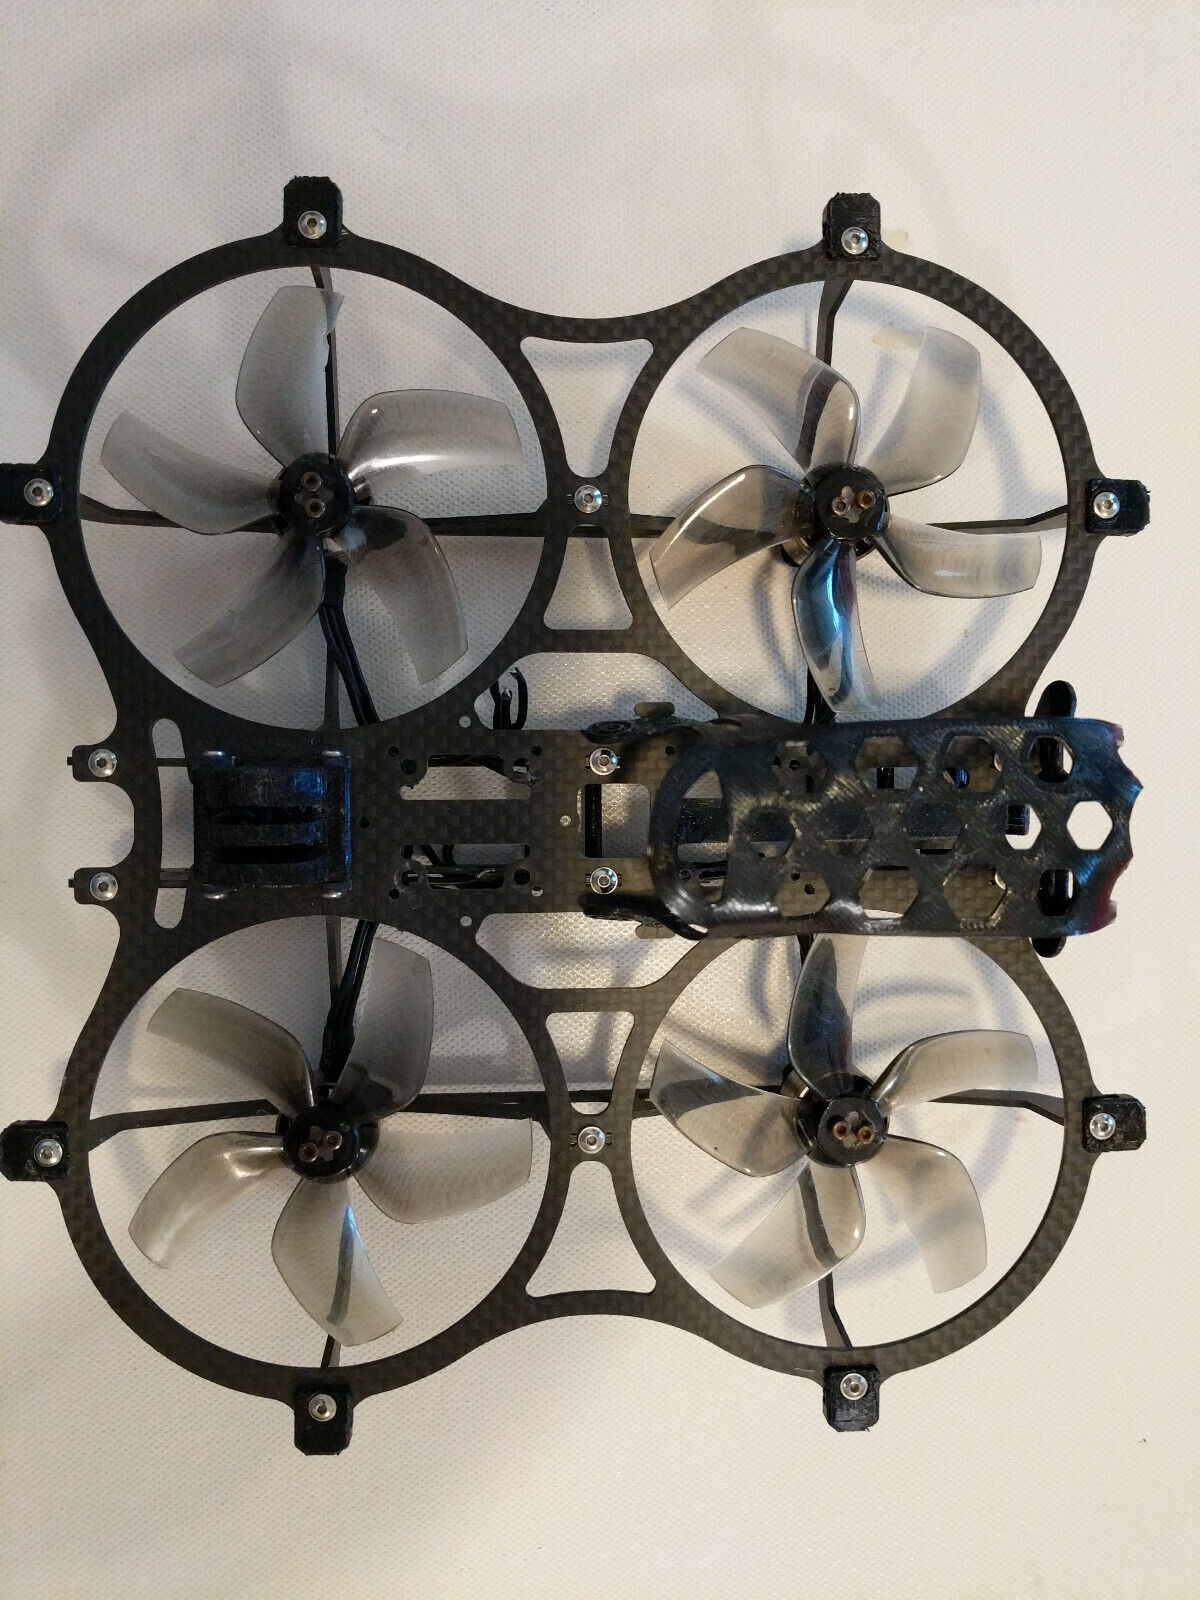 NewBeeDrone Cinemah quadcopter with motors